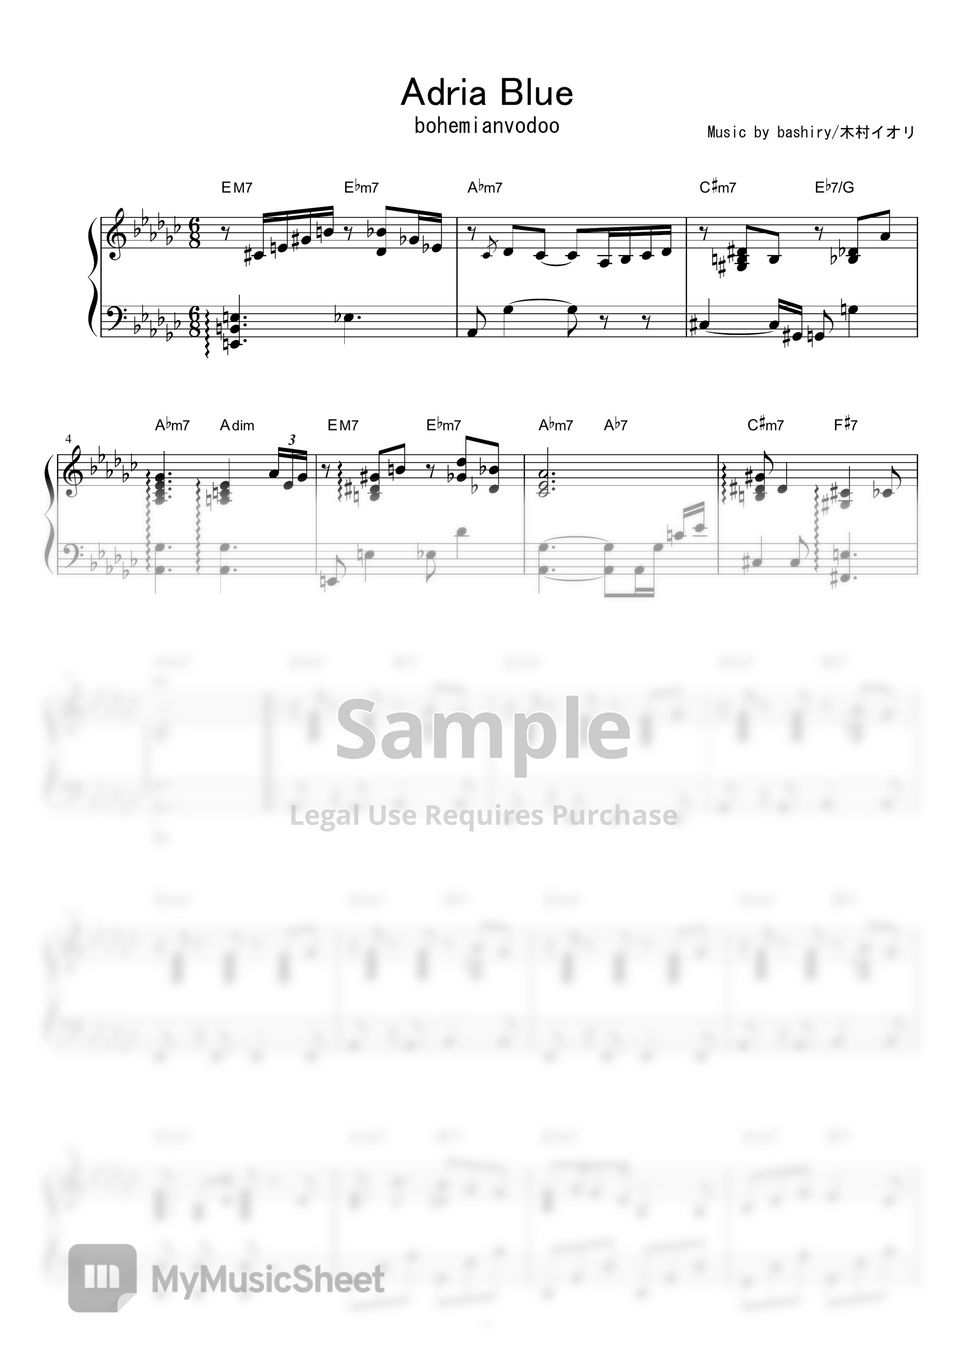 bohemianvoodoo - Adria Blue by piano*score